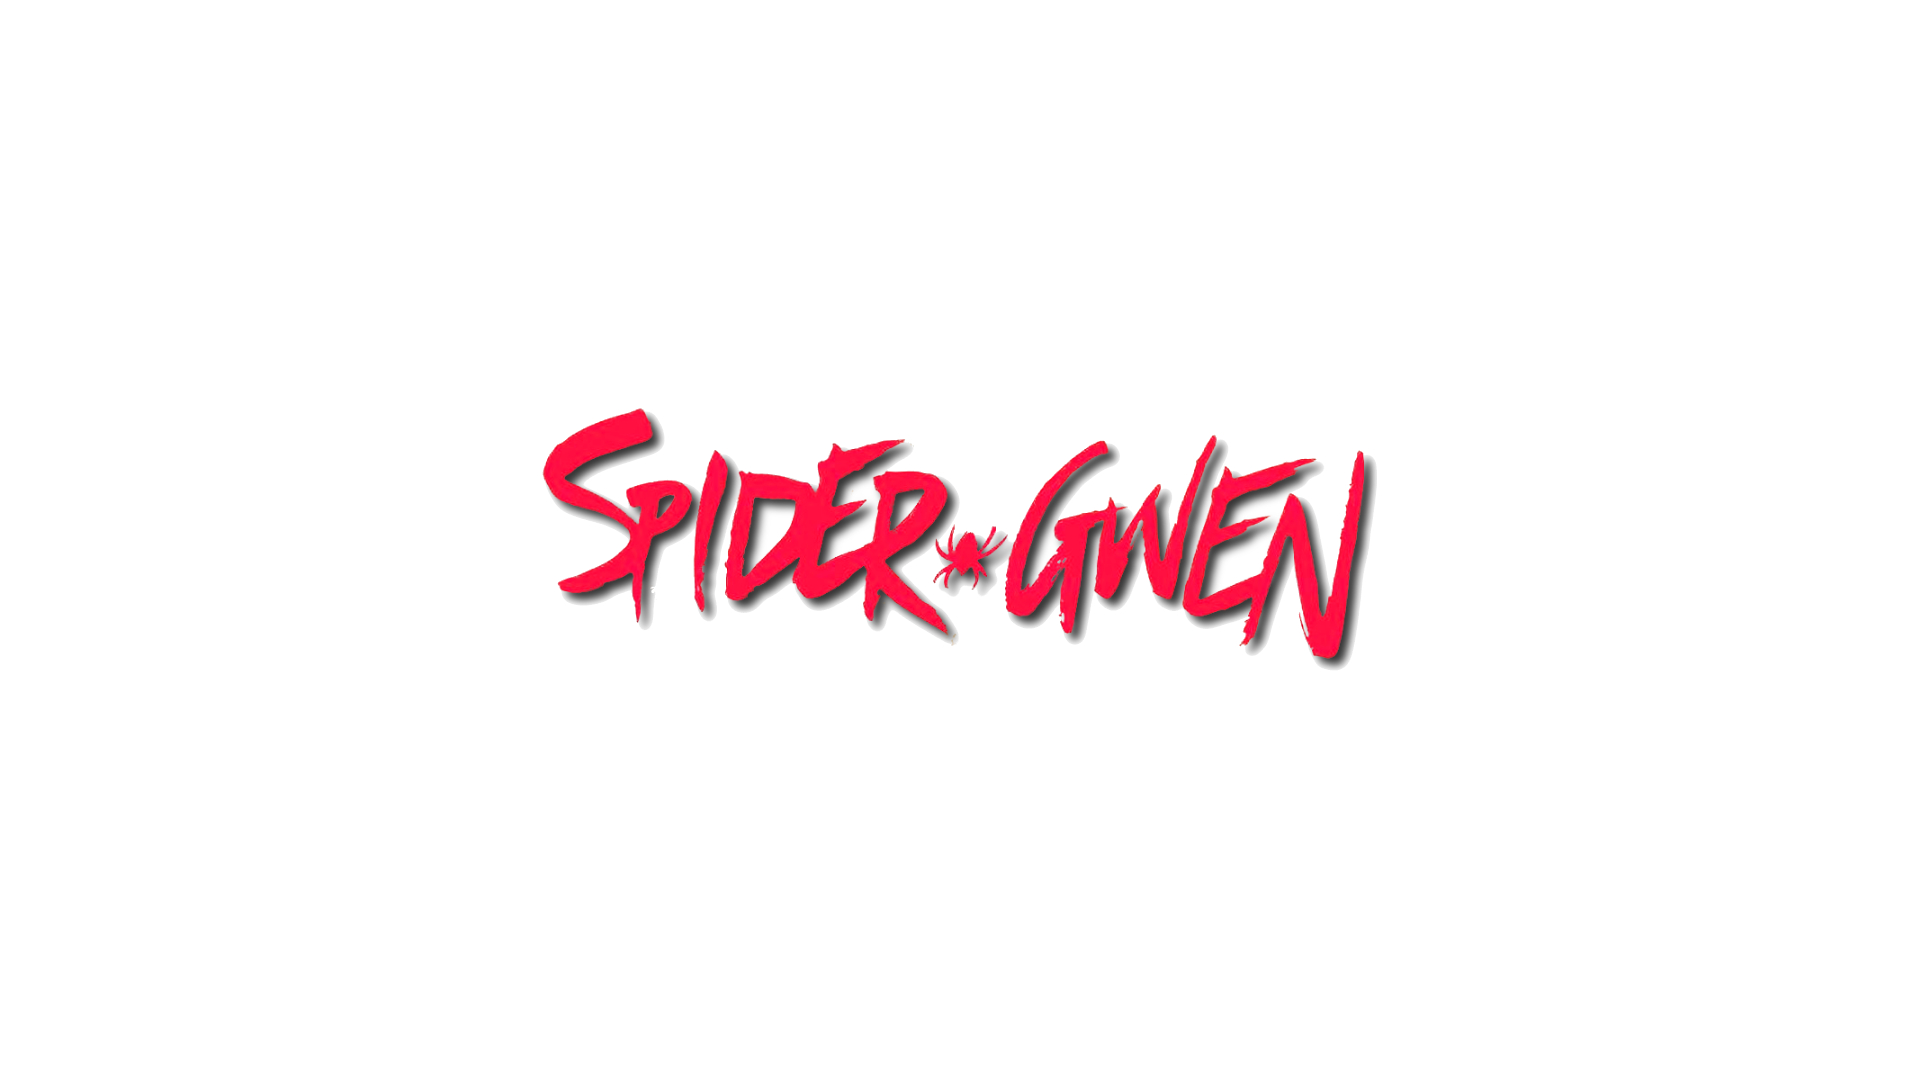 Spider Gwen Spider Girl Marvel Comics 1920x1080